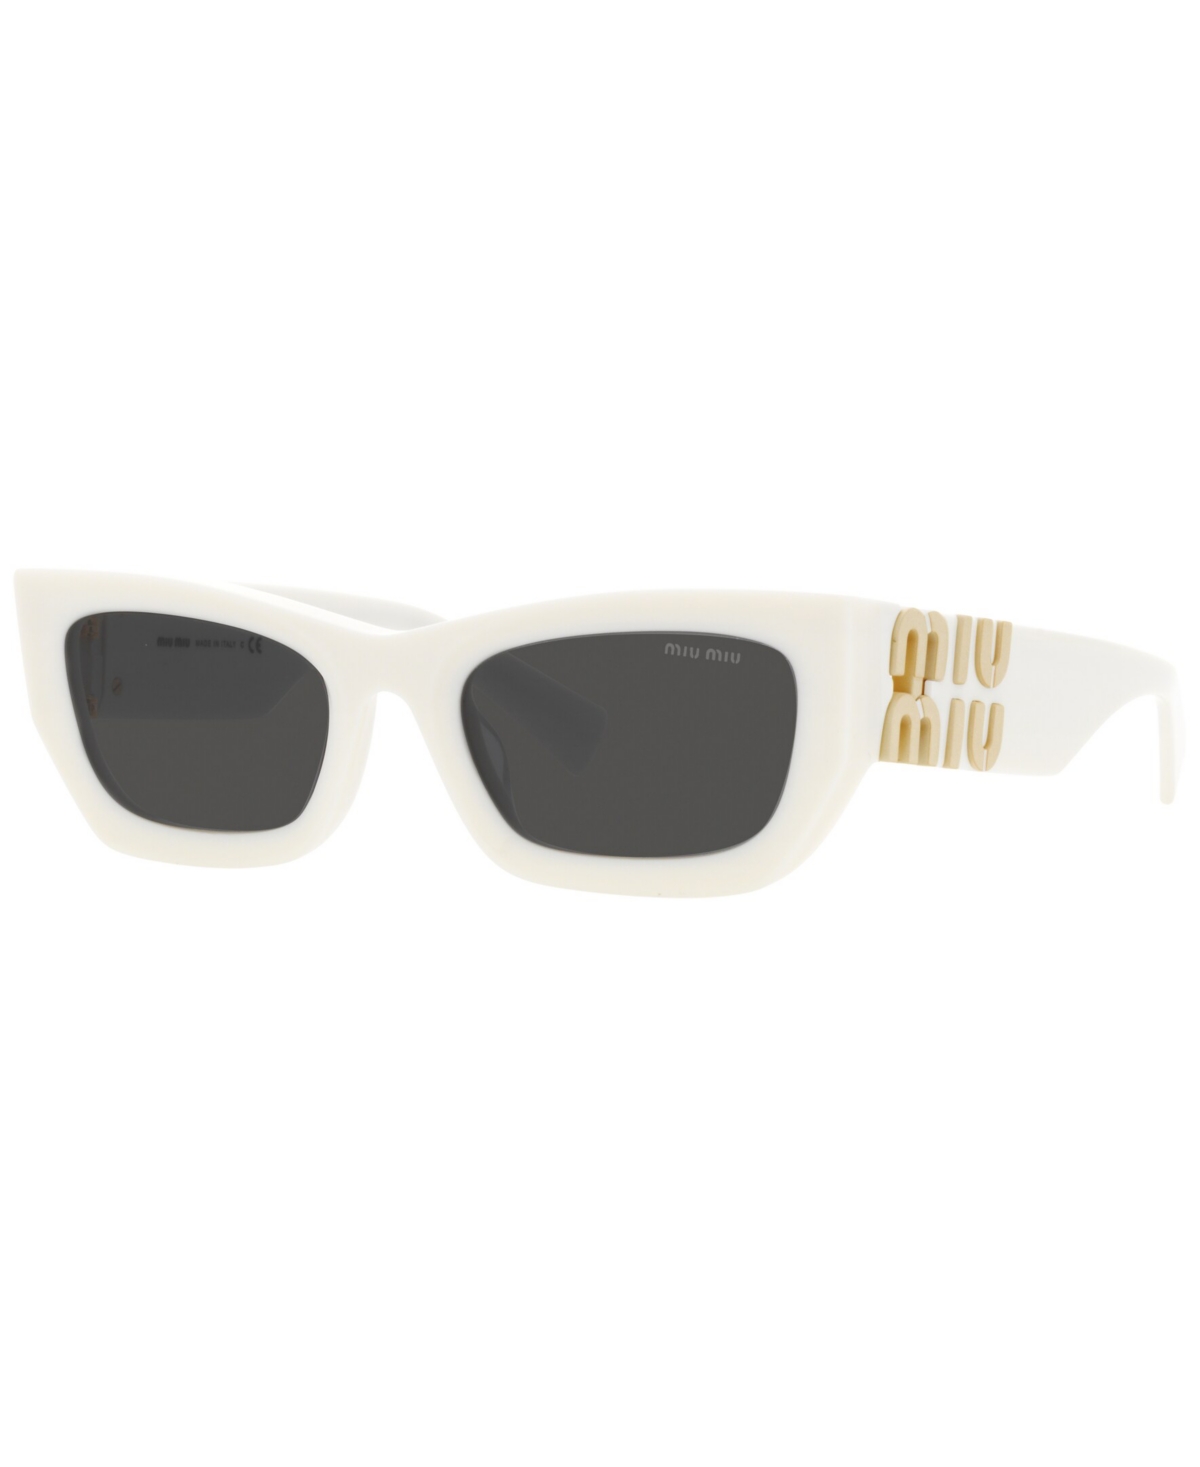 Miu Miu Eyewear Collection Sunglasses In White